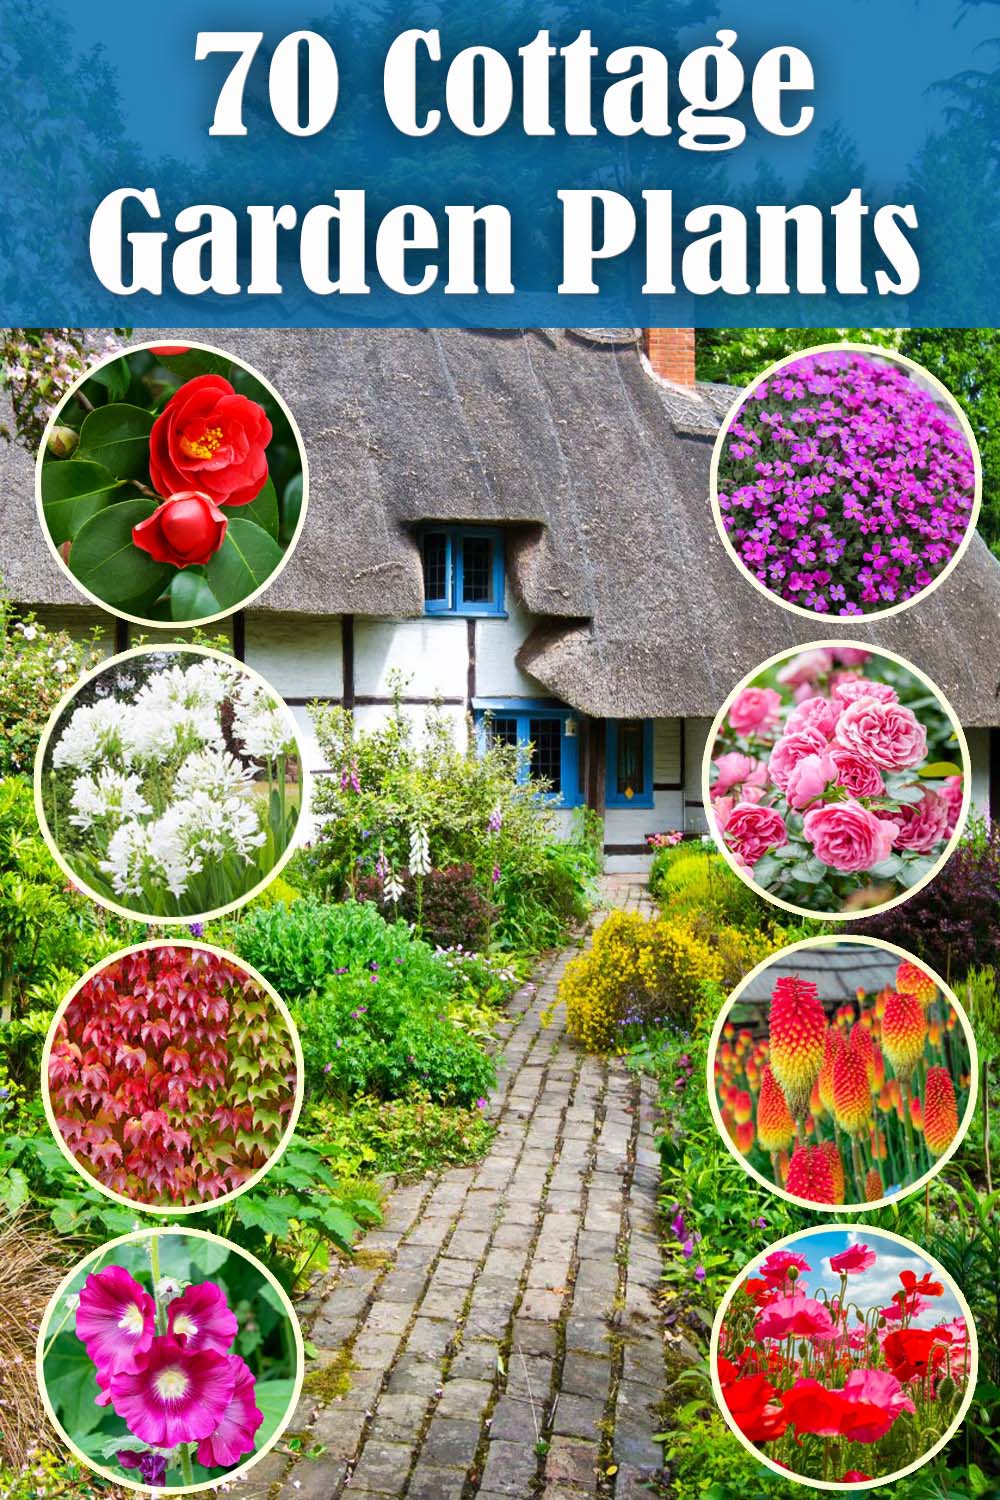 Cottage garden plants